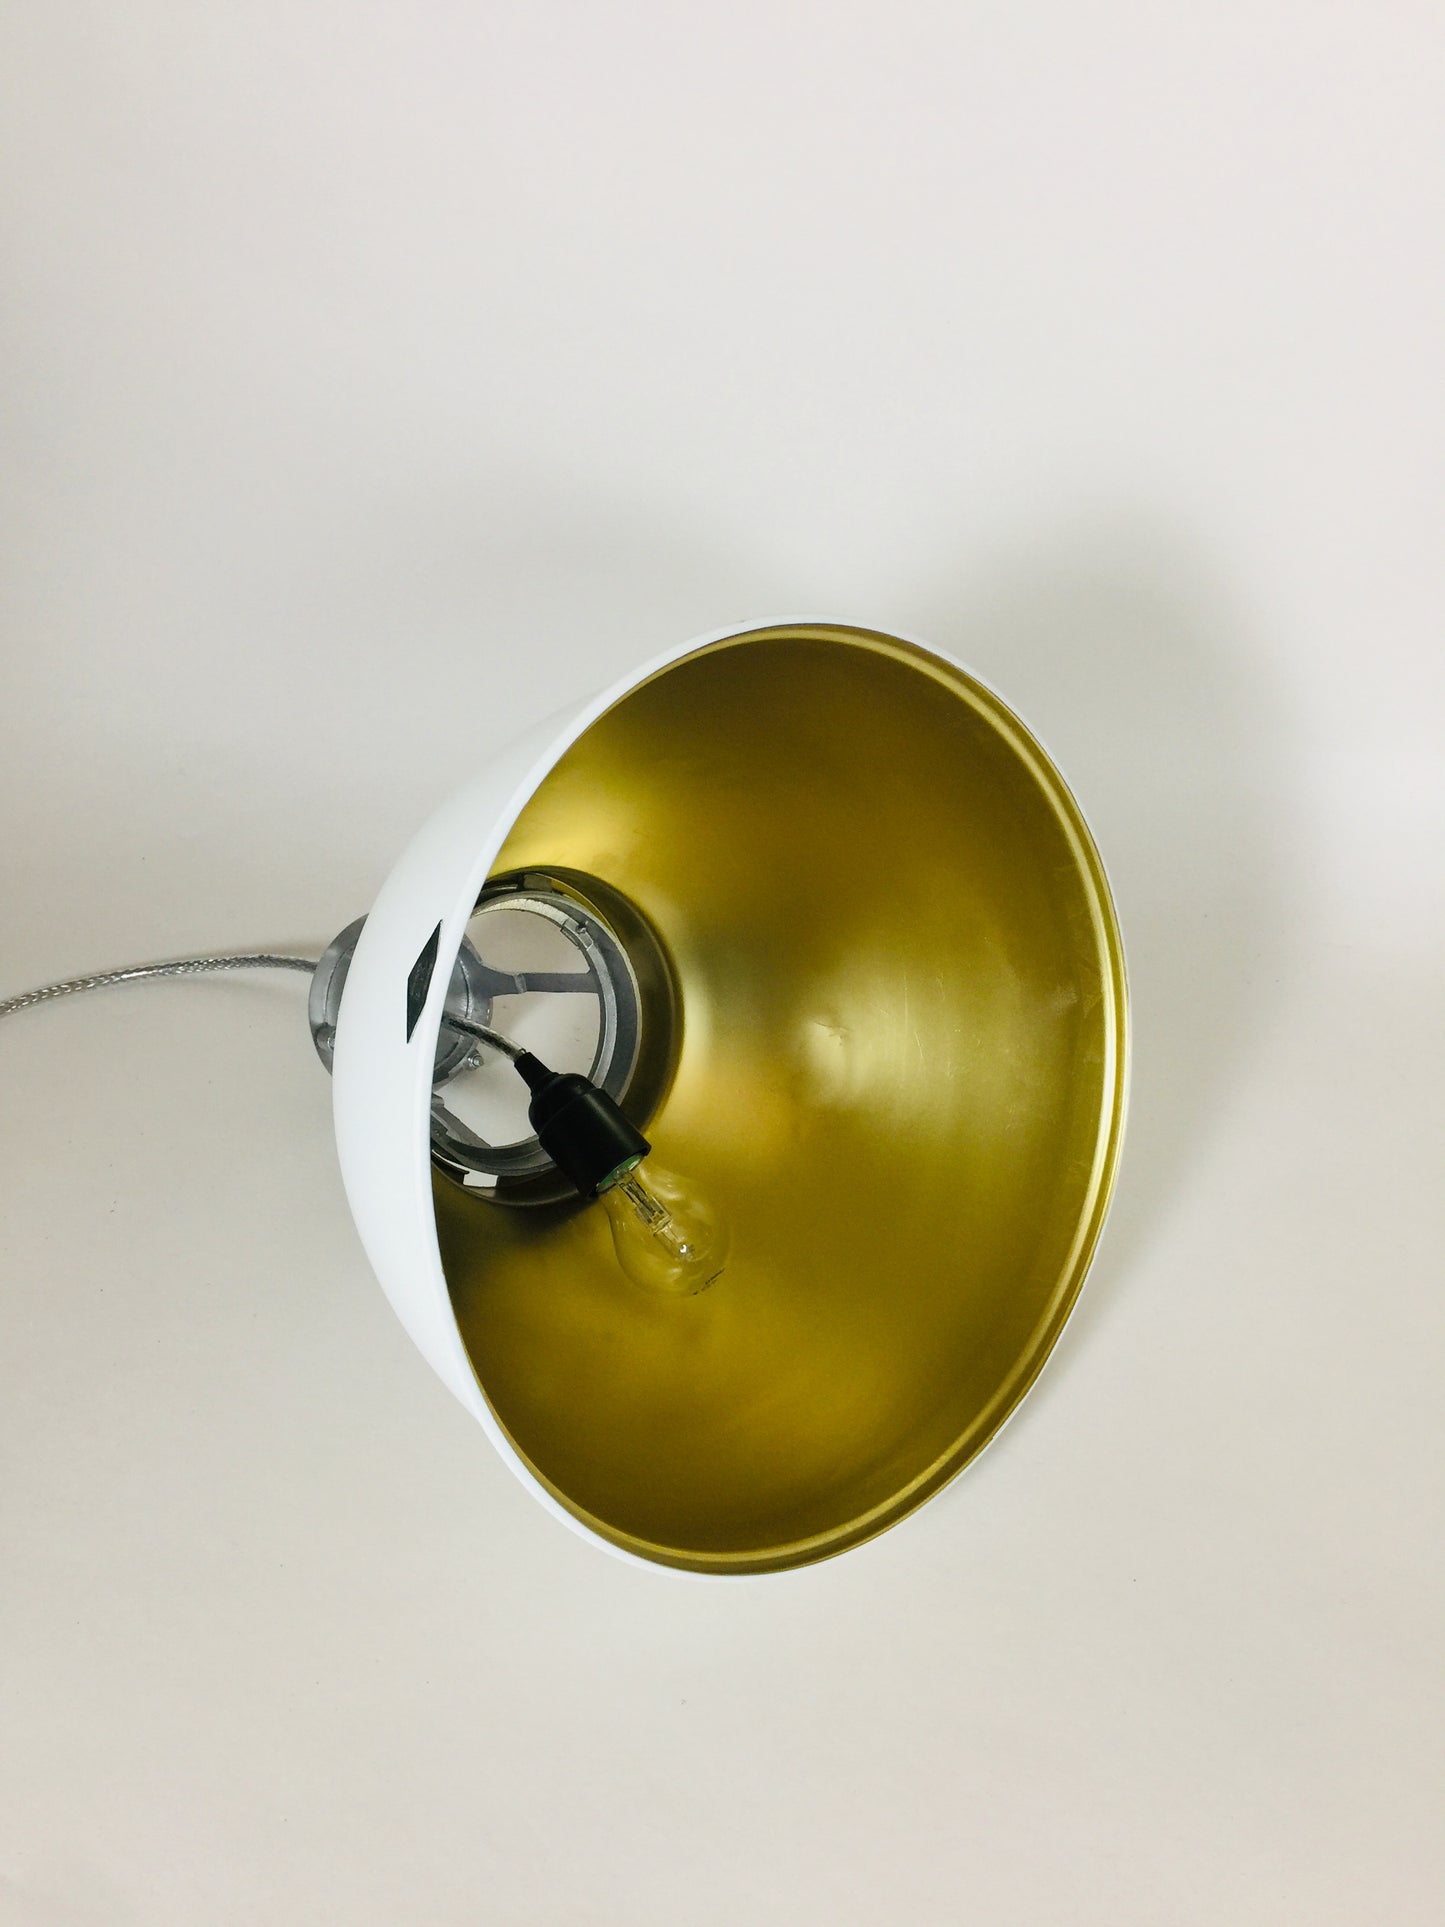 Btc lampa vit med guld - Titan